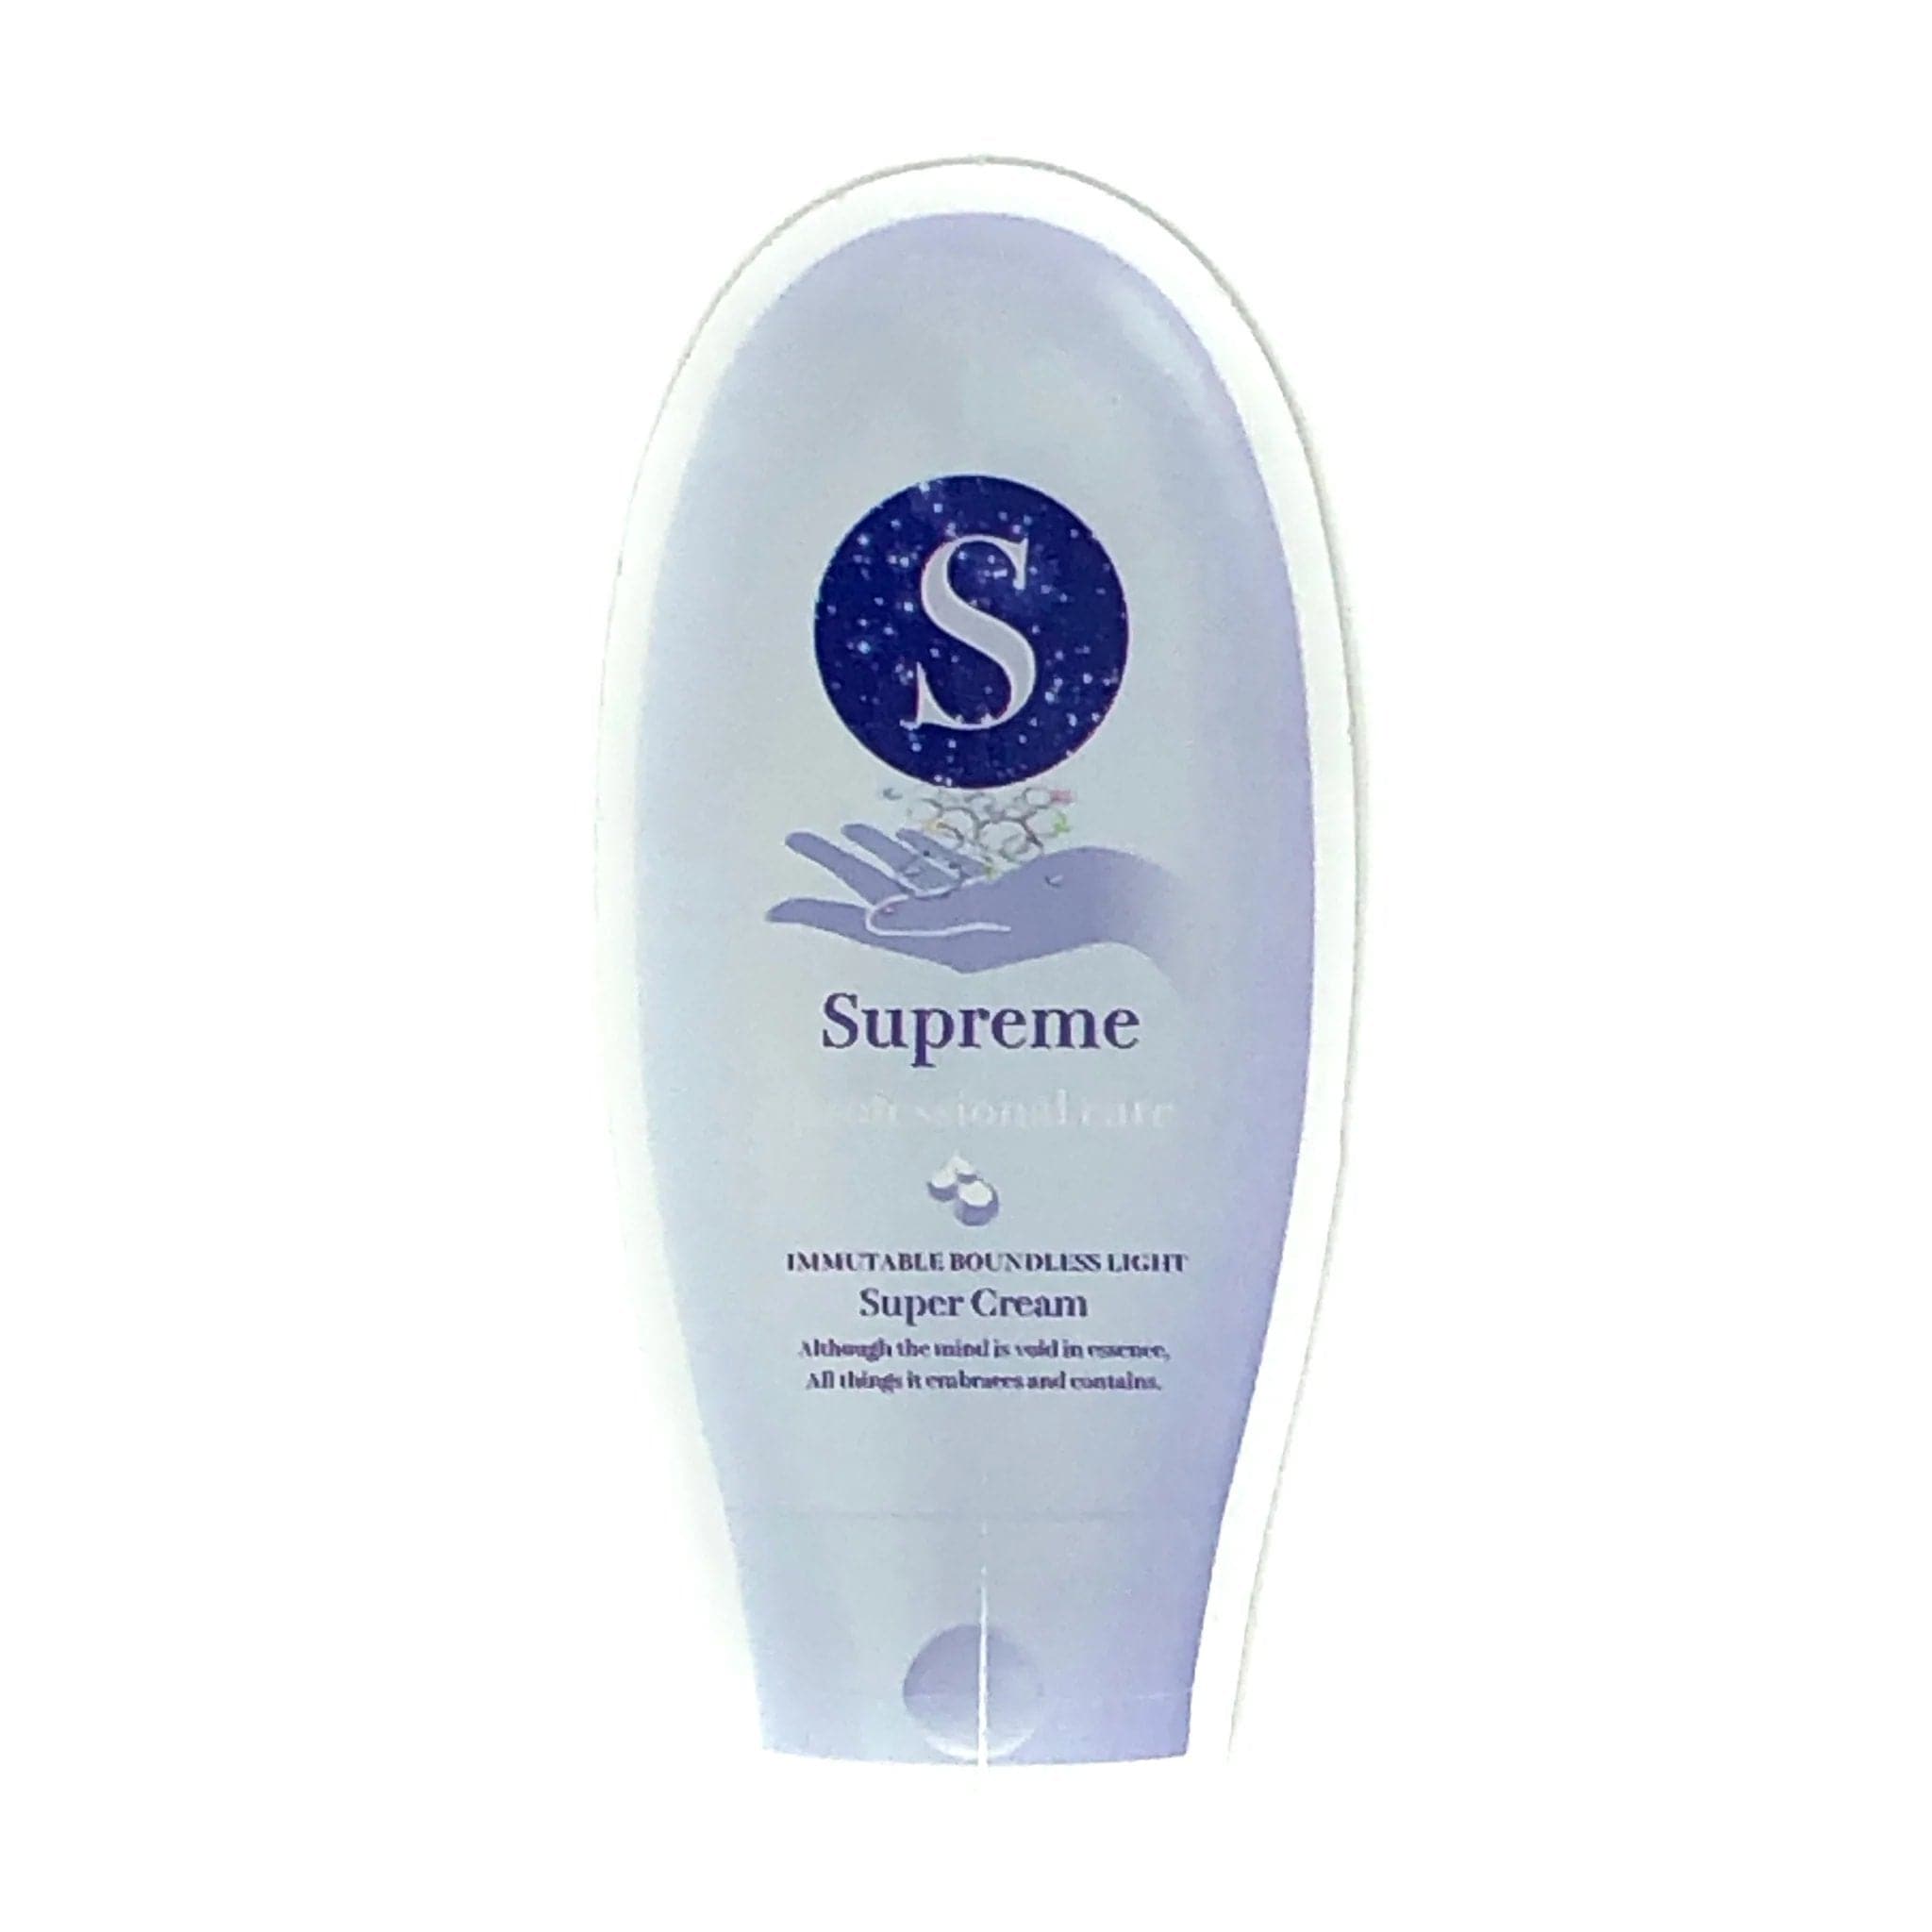 SUPREME - SUPER CREAM SOAP STICKER - The Magnolia Park